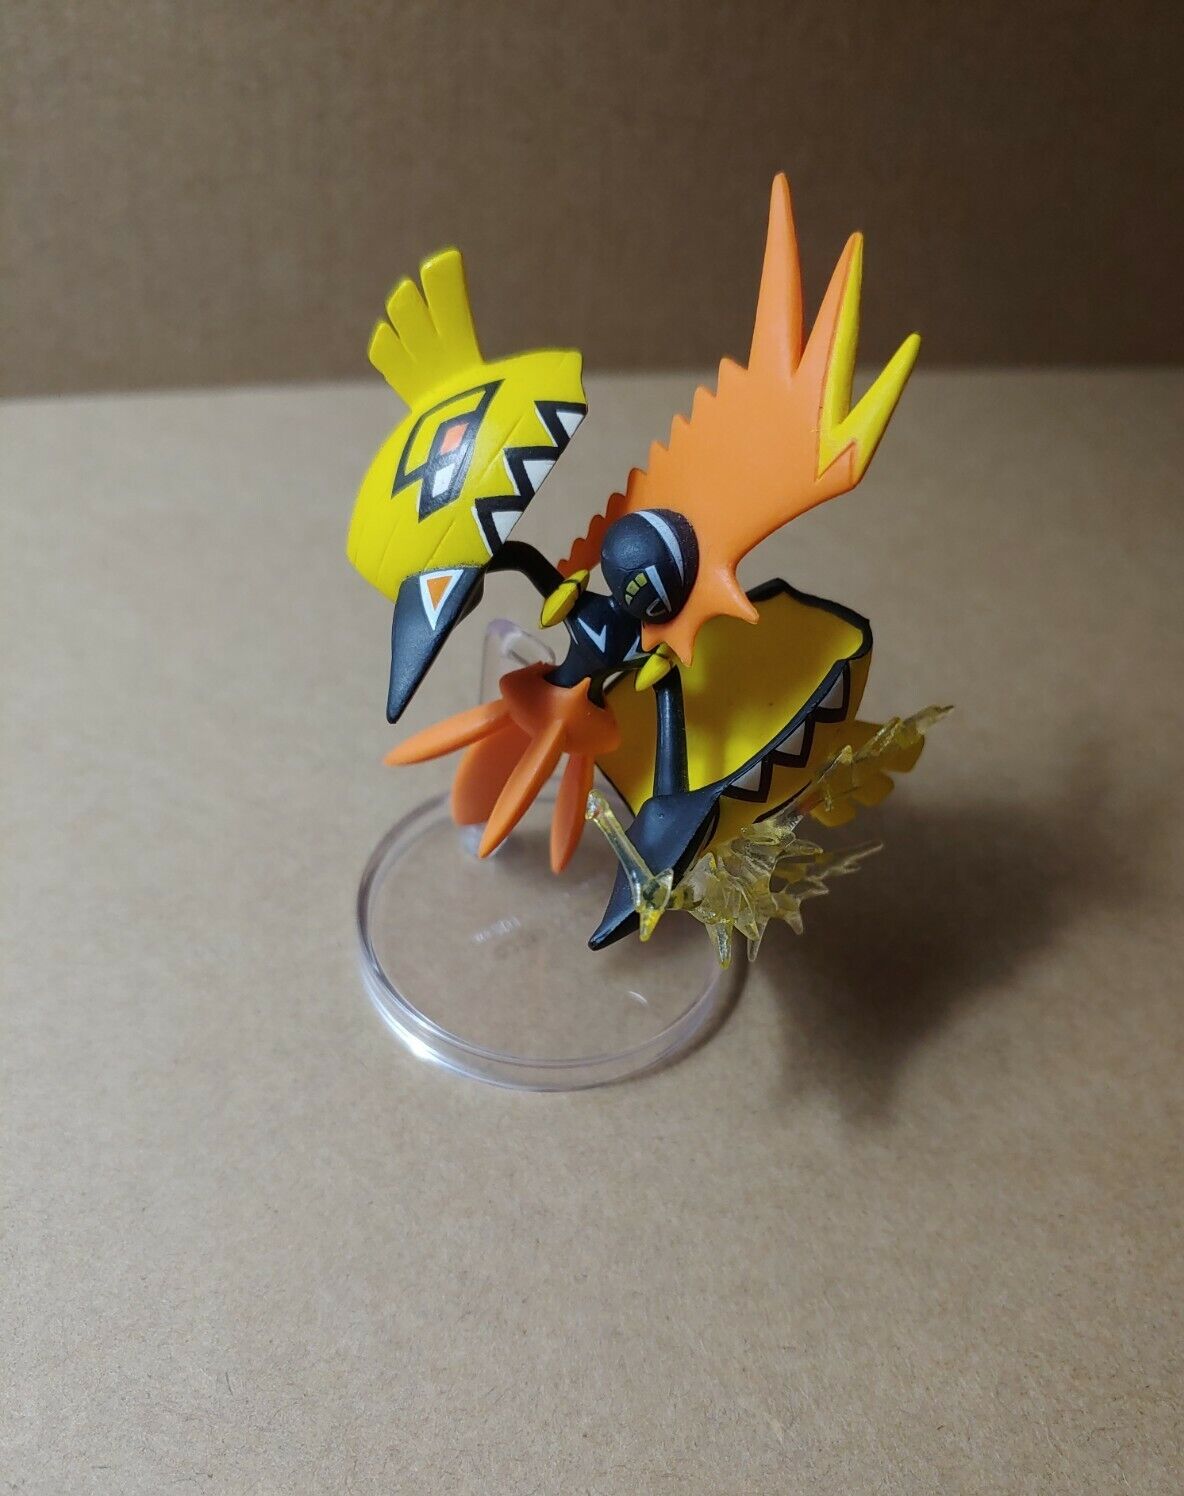 Tapu Koko Pokemon Figure With Stand Pokémon Figurine